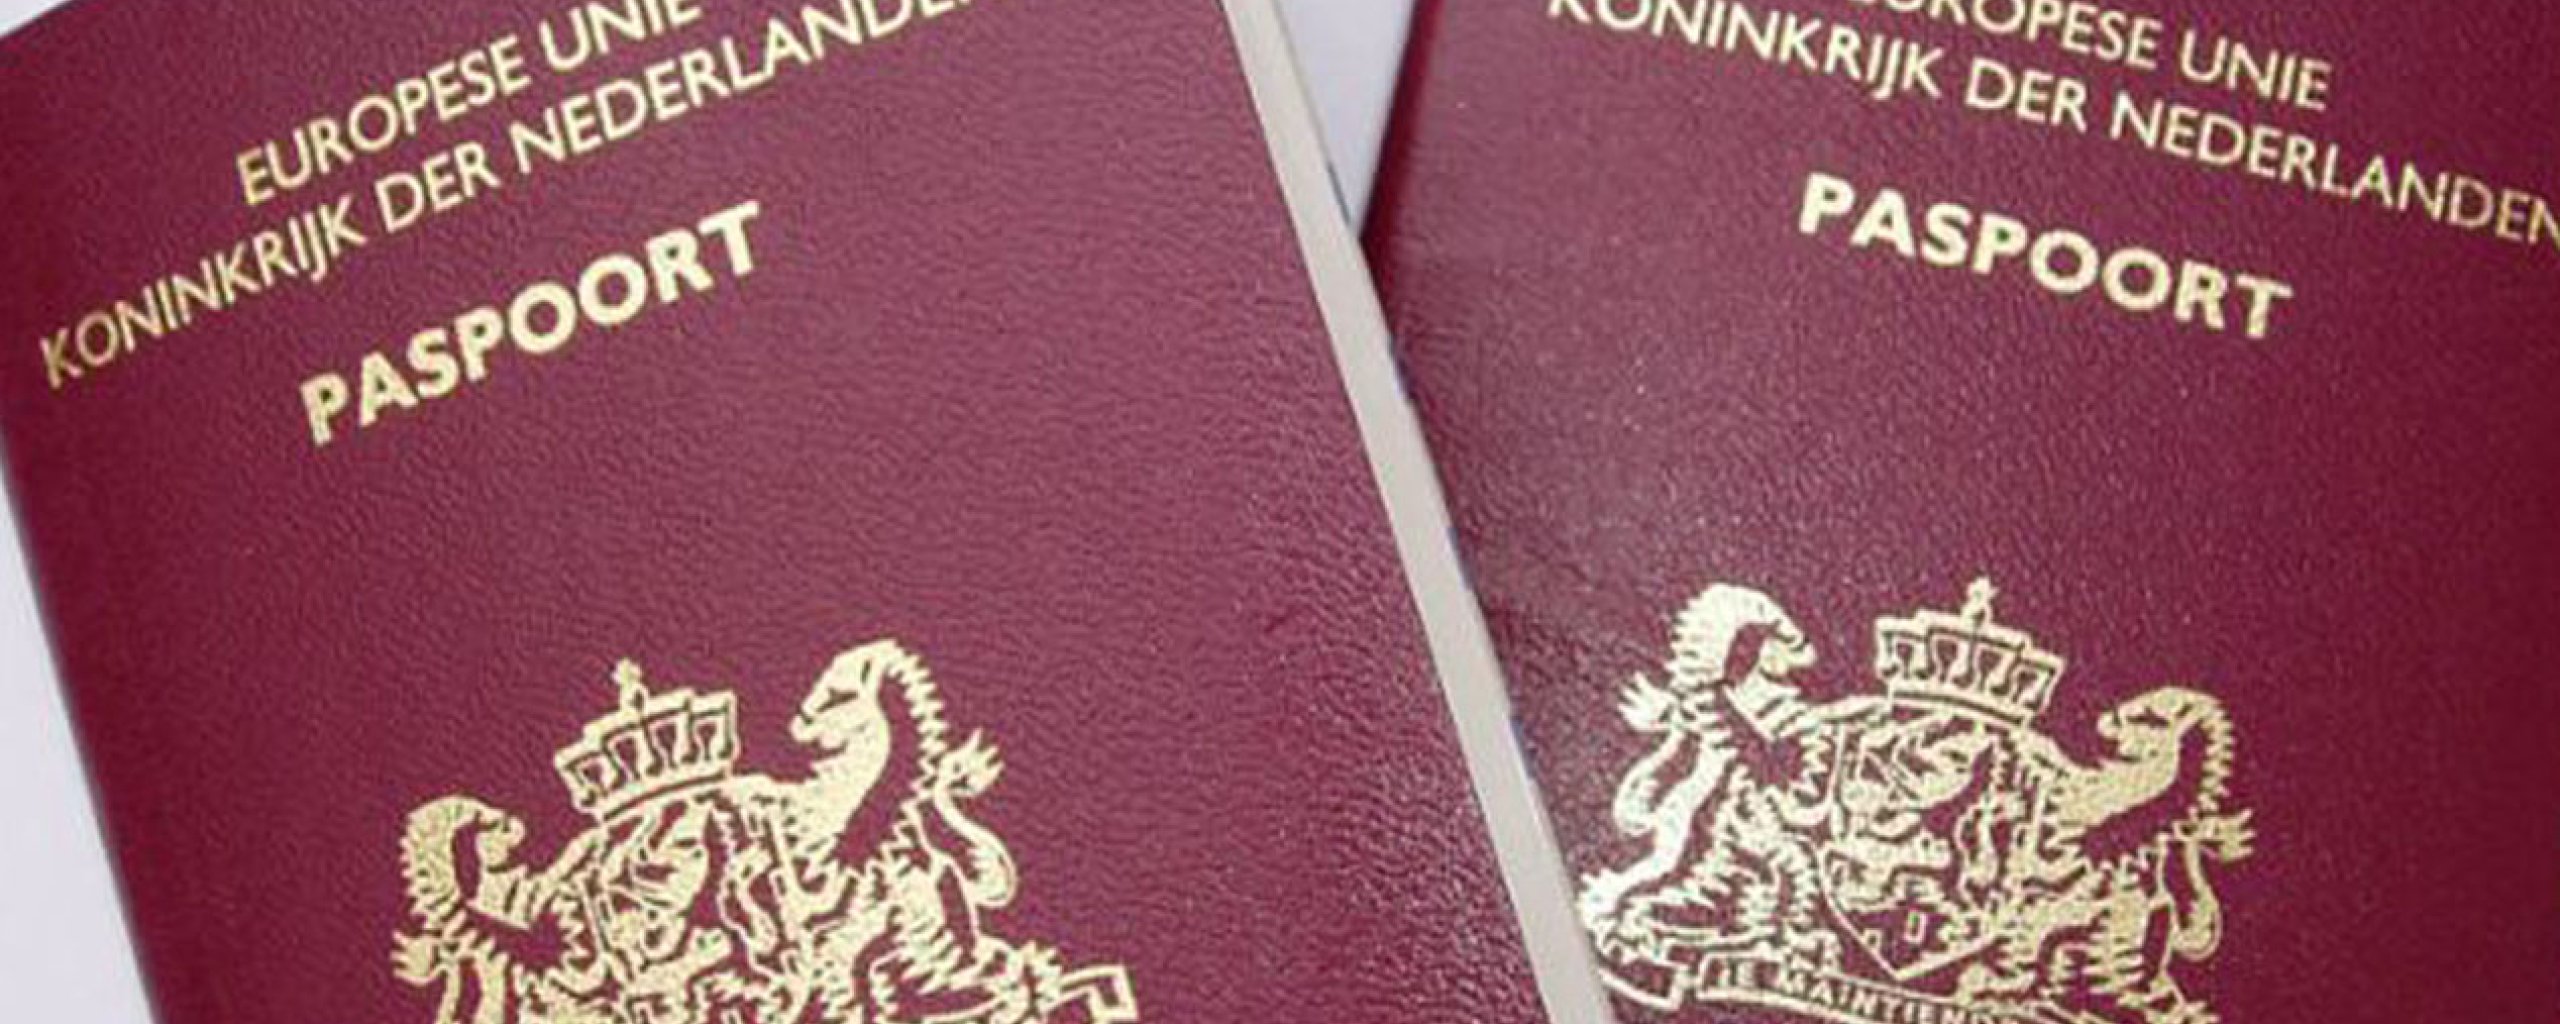 Agressief Onderstrepen Verheugen Paspoort | Gemeente Lingewaard